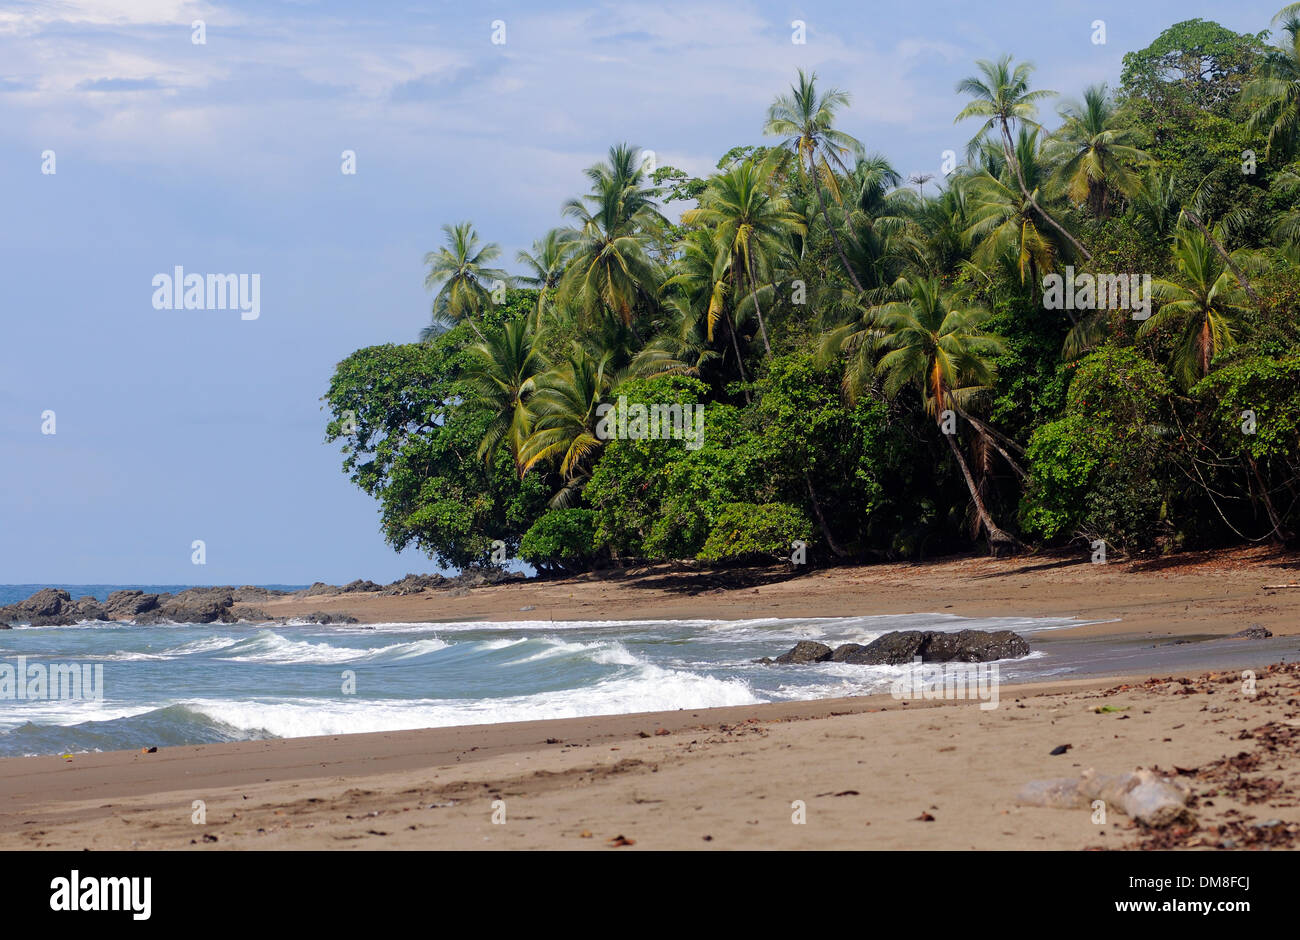 Plage de sable avec des cocotiers. L'Île Cano , Parc national de Corcovado, Golfito, Costa Rica. 27Nov13 Banque D'Images